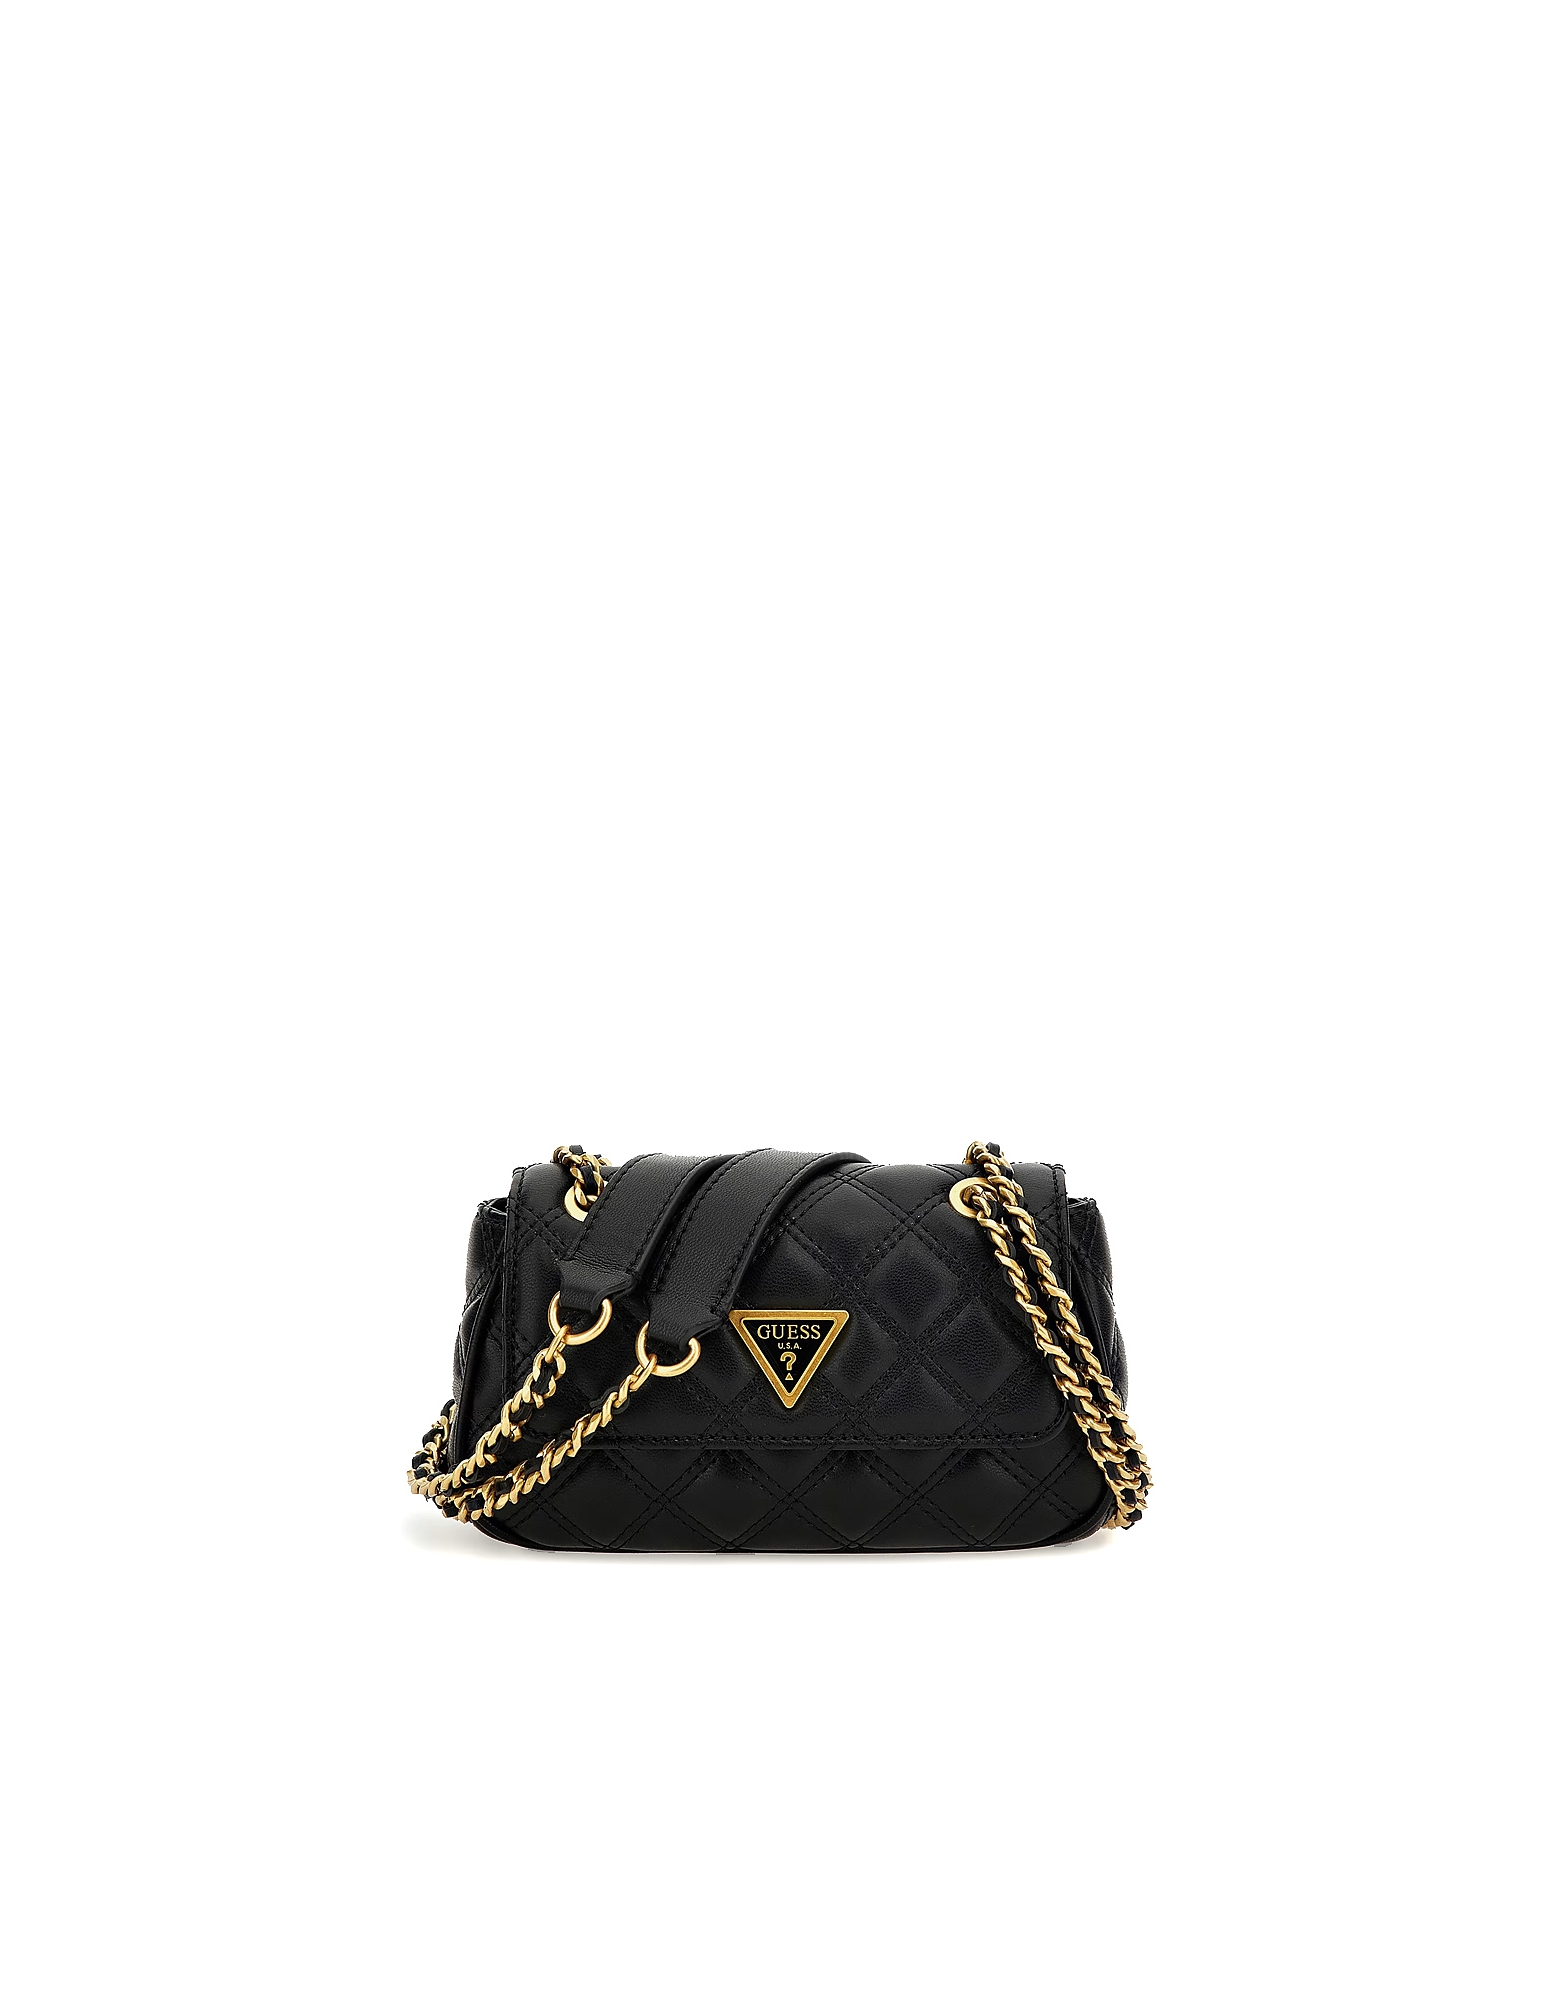 Guess Designer Handbags Women's Mini Bag In Black